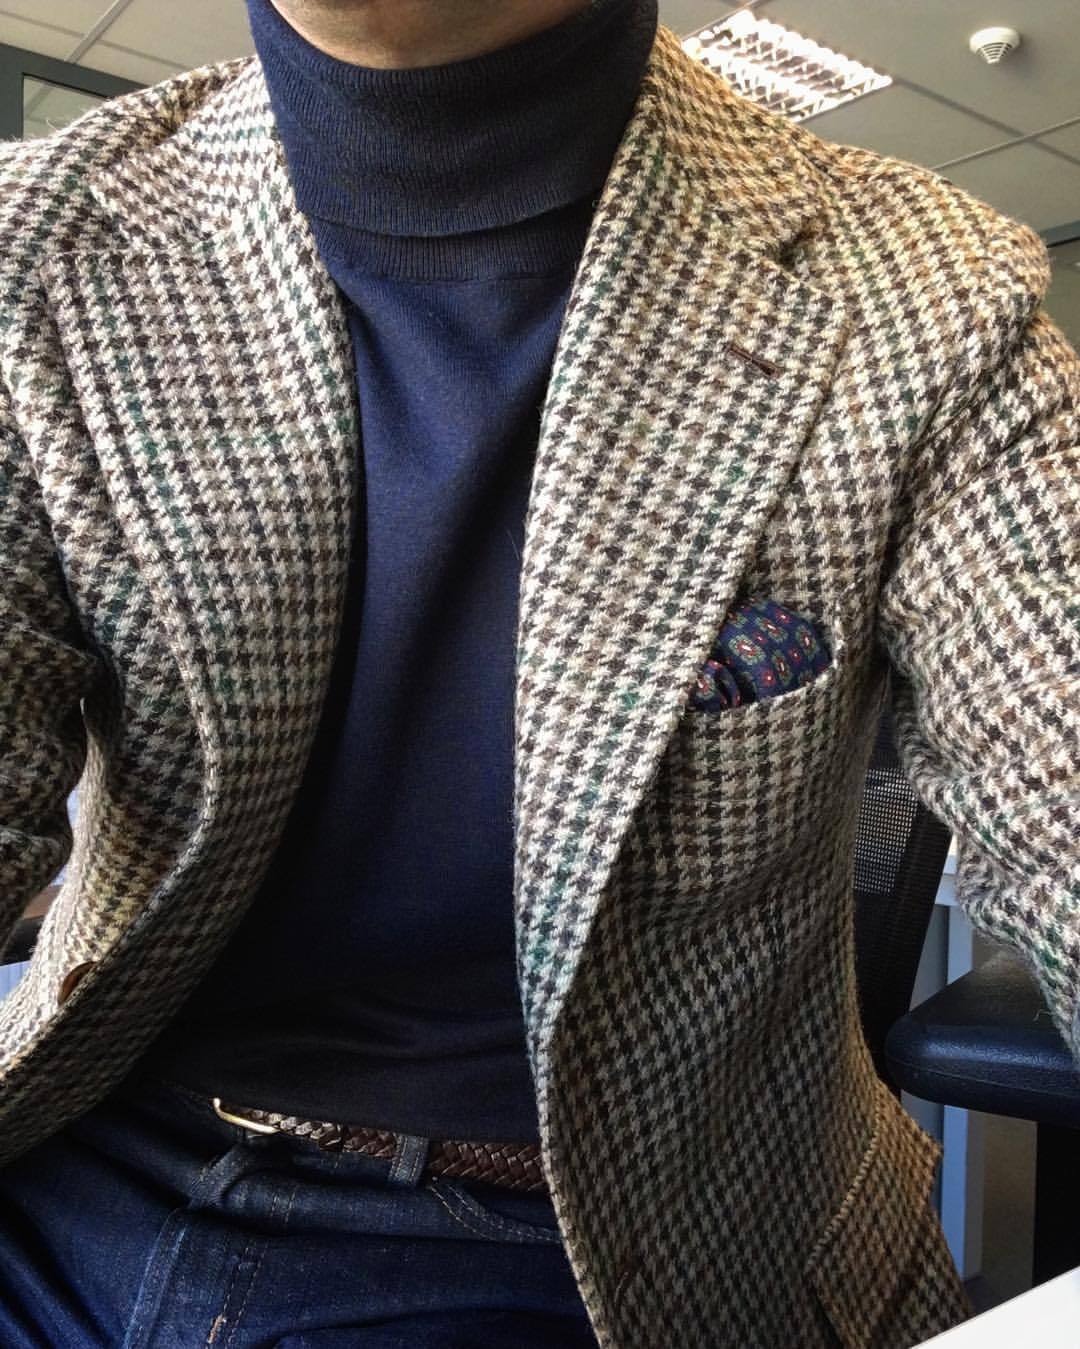 Voilà un bon exemple de la manière dont une veste en tweed peut s’intégrer à une base très casual (col roulé/jeans/ceinture tressée). On peut même se permettre le luxe d’ajouter une pochette. 